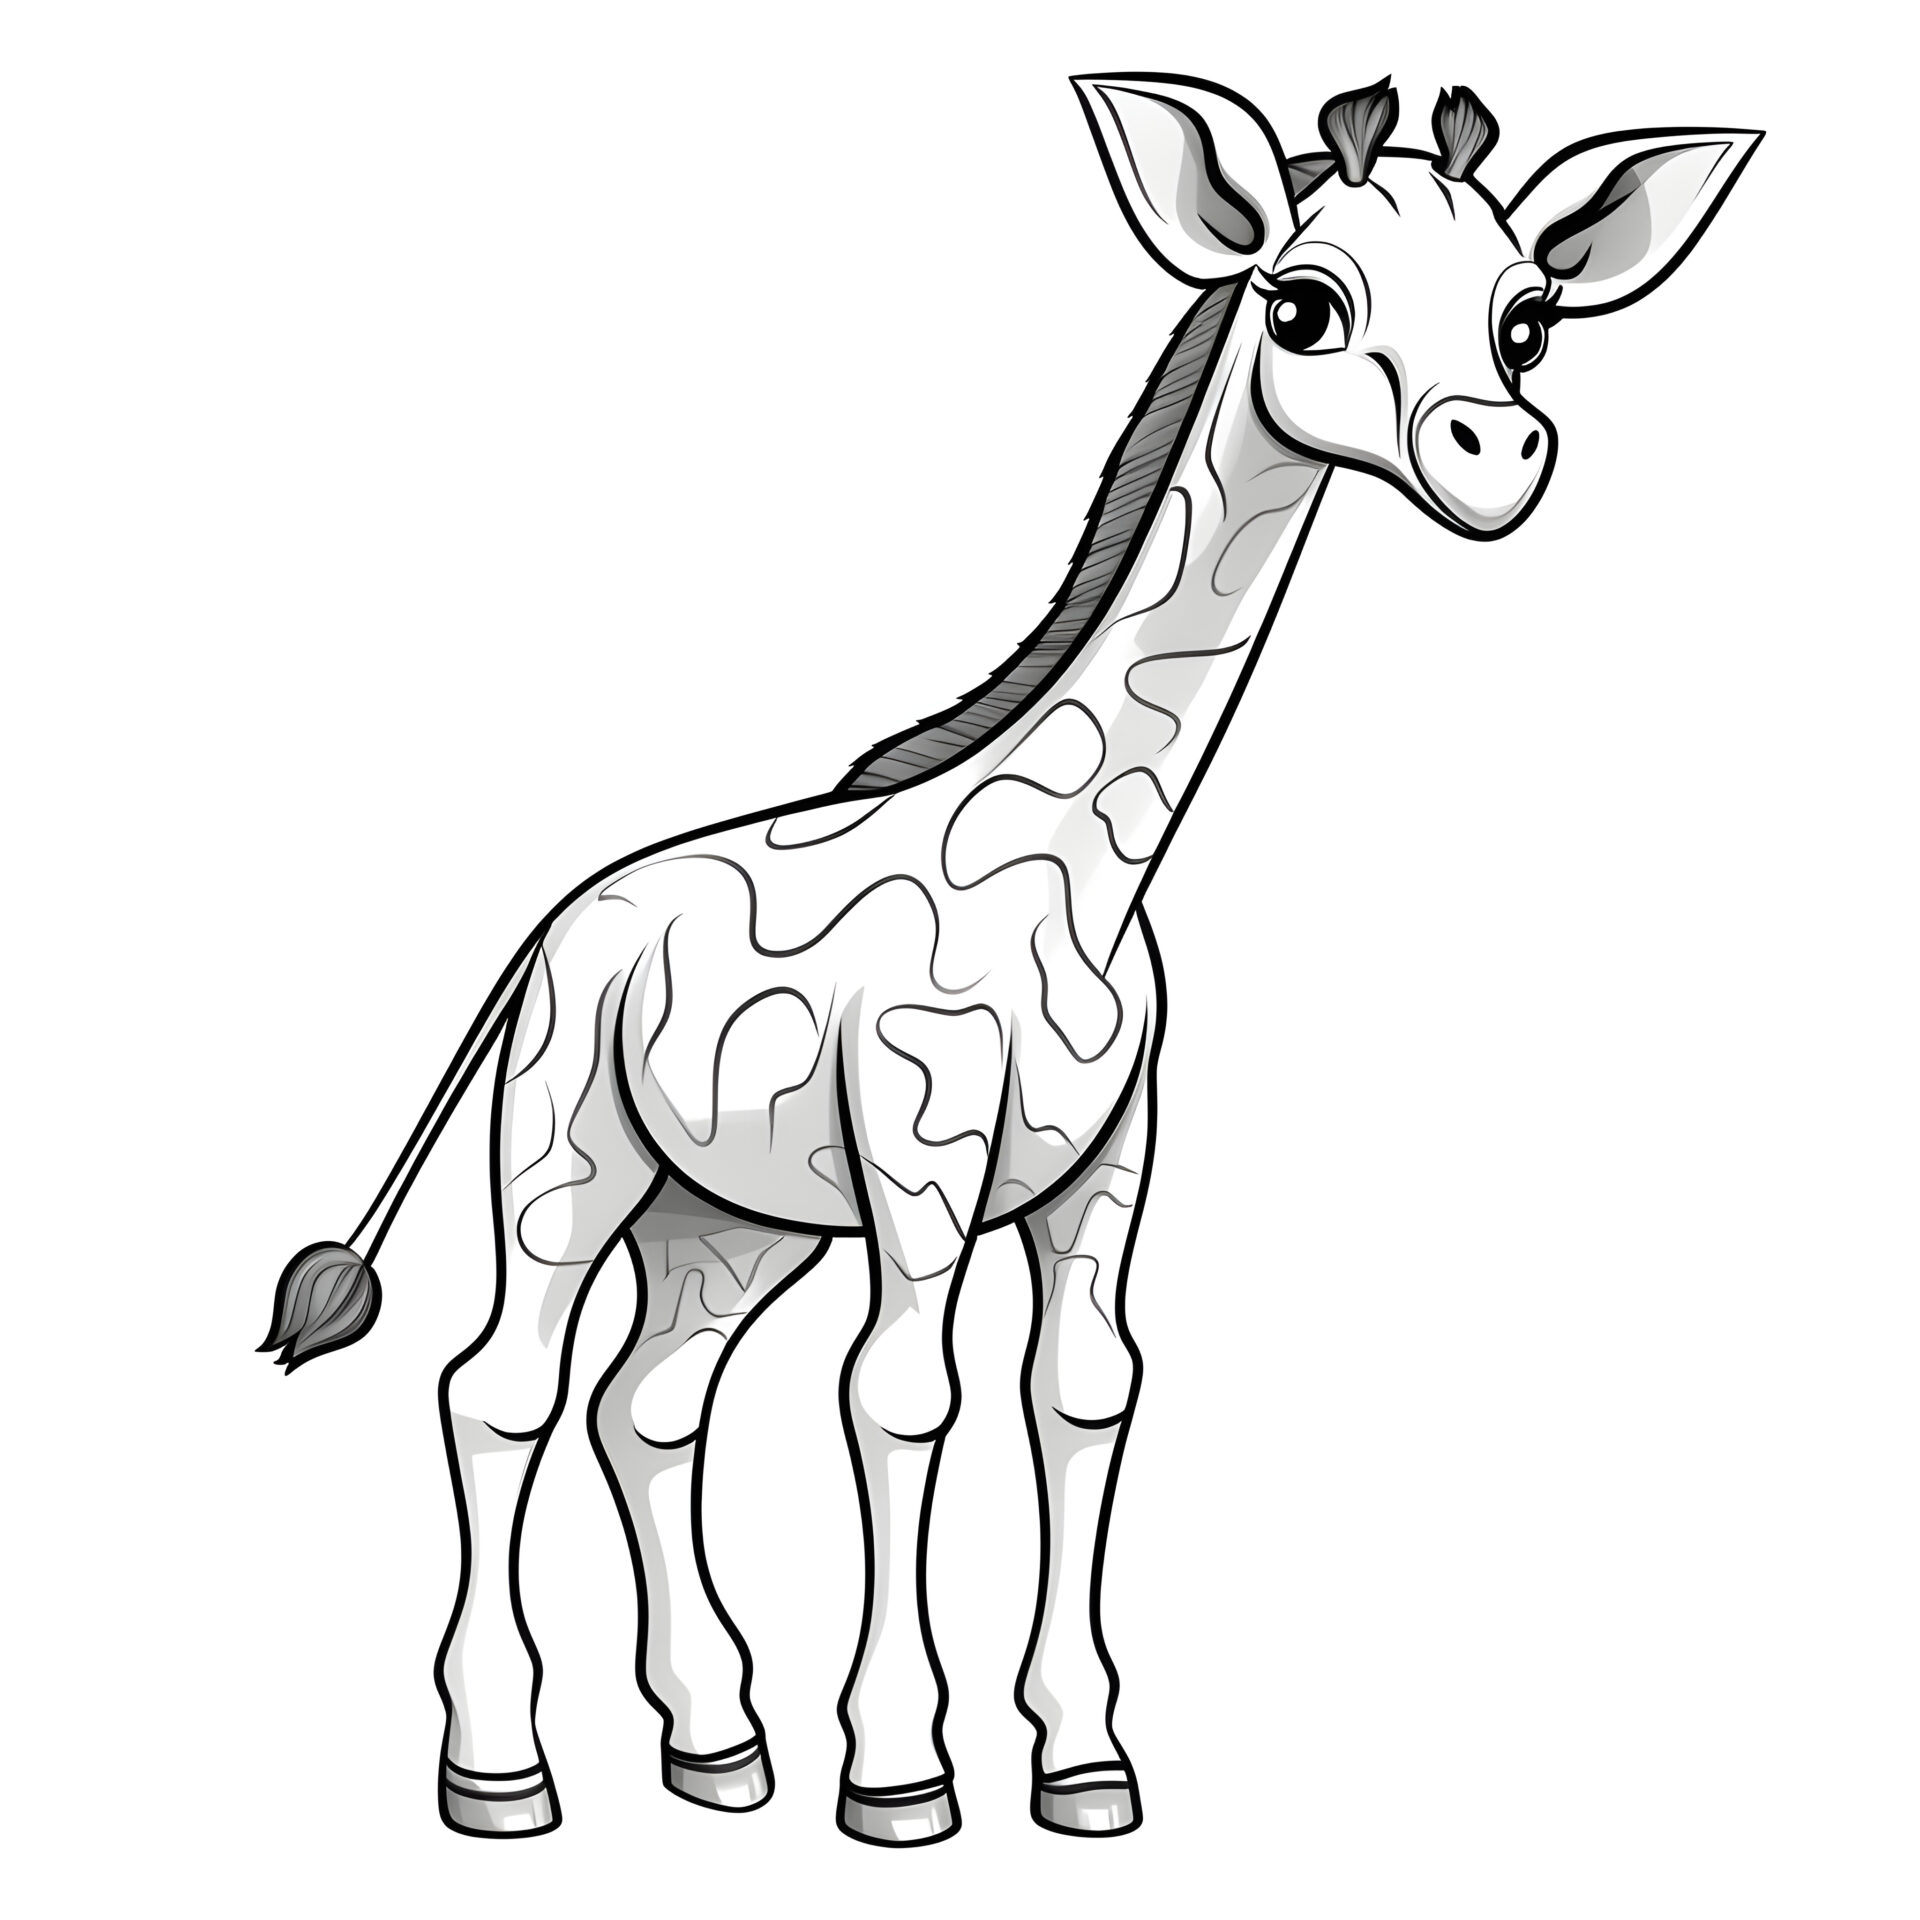 Eine sehr einfache Cartoon-Giraffe in einem Malbuch für Kinder